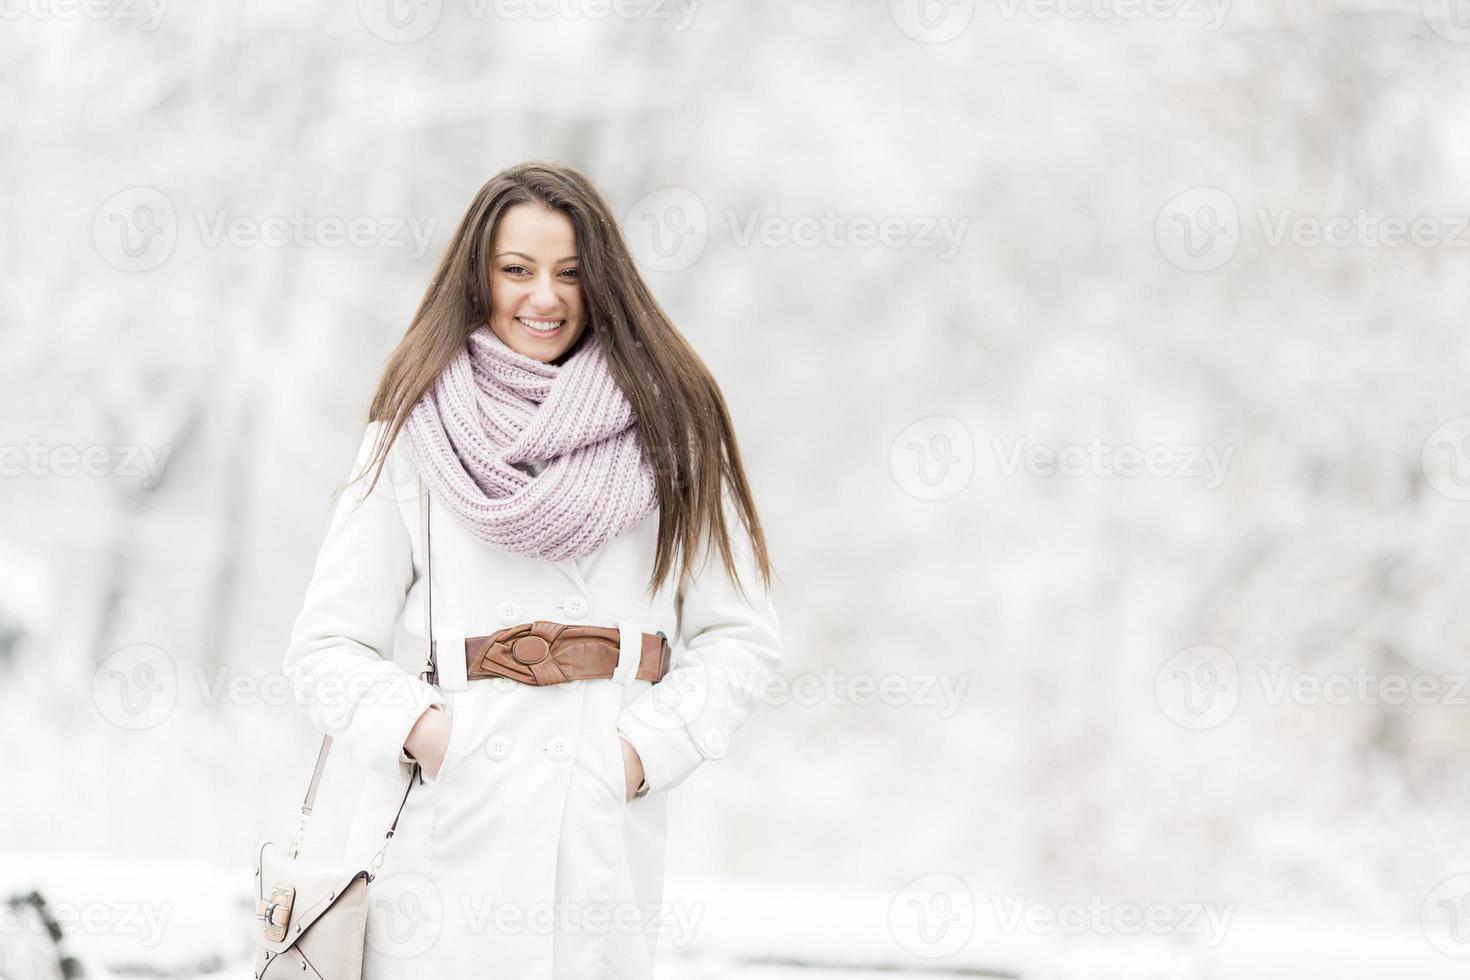 ung kvinna på vintern foto